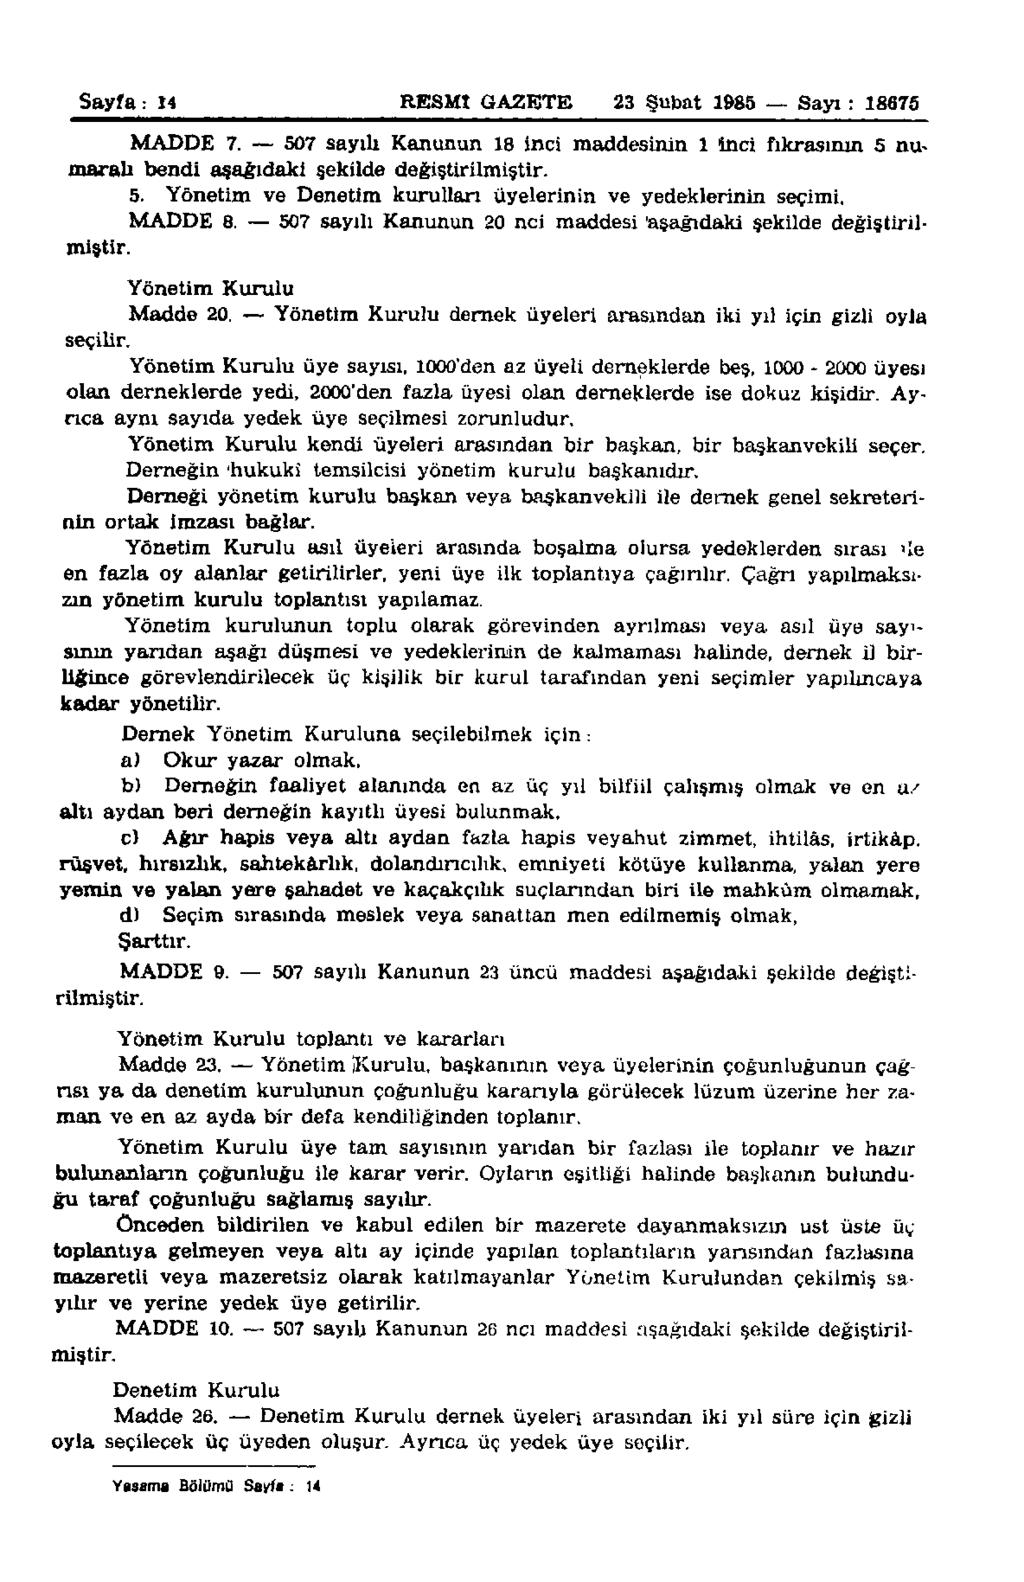 Sayfa: 14 RESMİ GAZETE 23 Şubat 1985 Sayı : 18675 MADDE 7. 507 sayılı Kanunun 18 inci maddesinin 1 inci fıkrasının 5 numaralı bendi aşağıdaki şekilde değiştirilmiştir. 5. Yönetim ve Denetim kurulları üyelerinin ve yedeklerinin seçimi, MADDE 8.